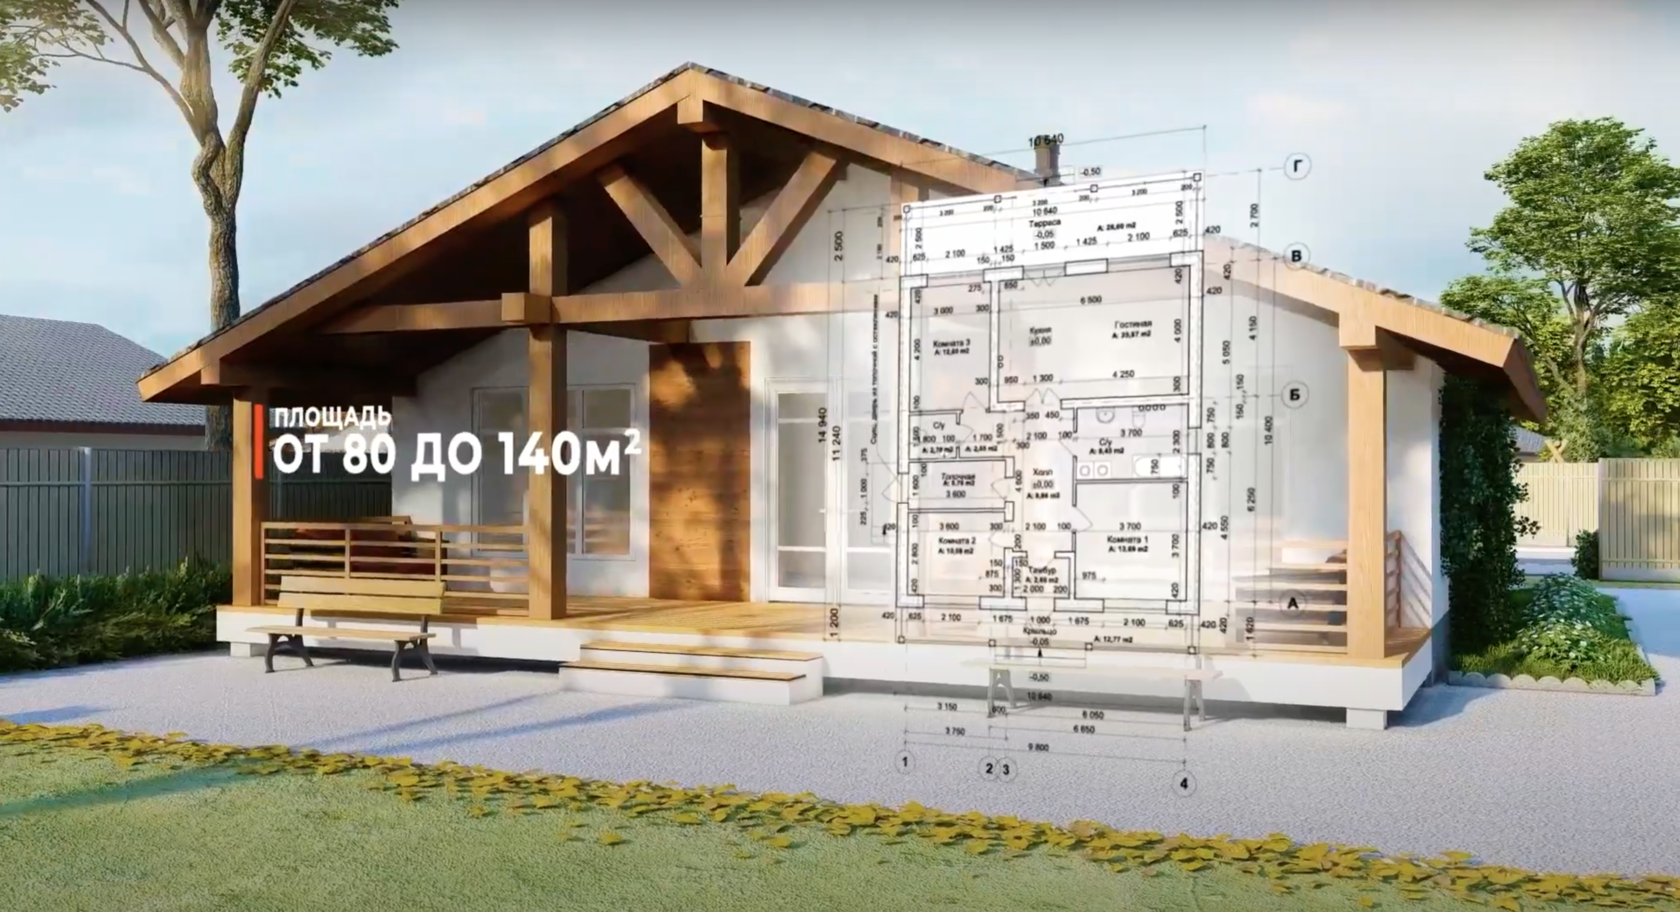 Пример инфографики из видеоролика о строительстве загородного поселка